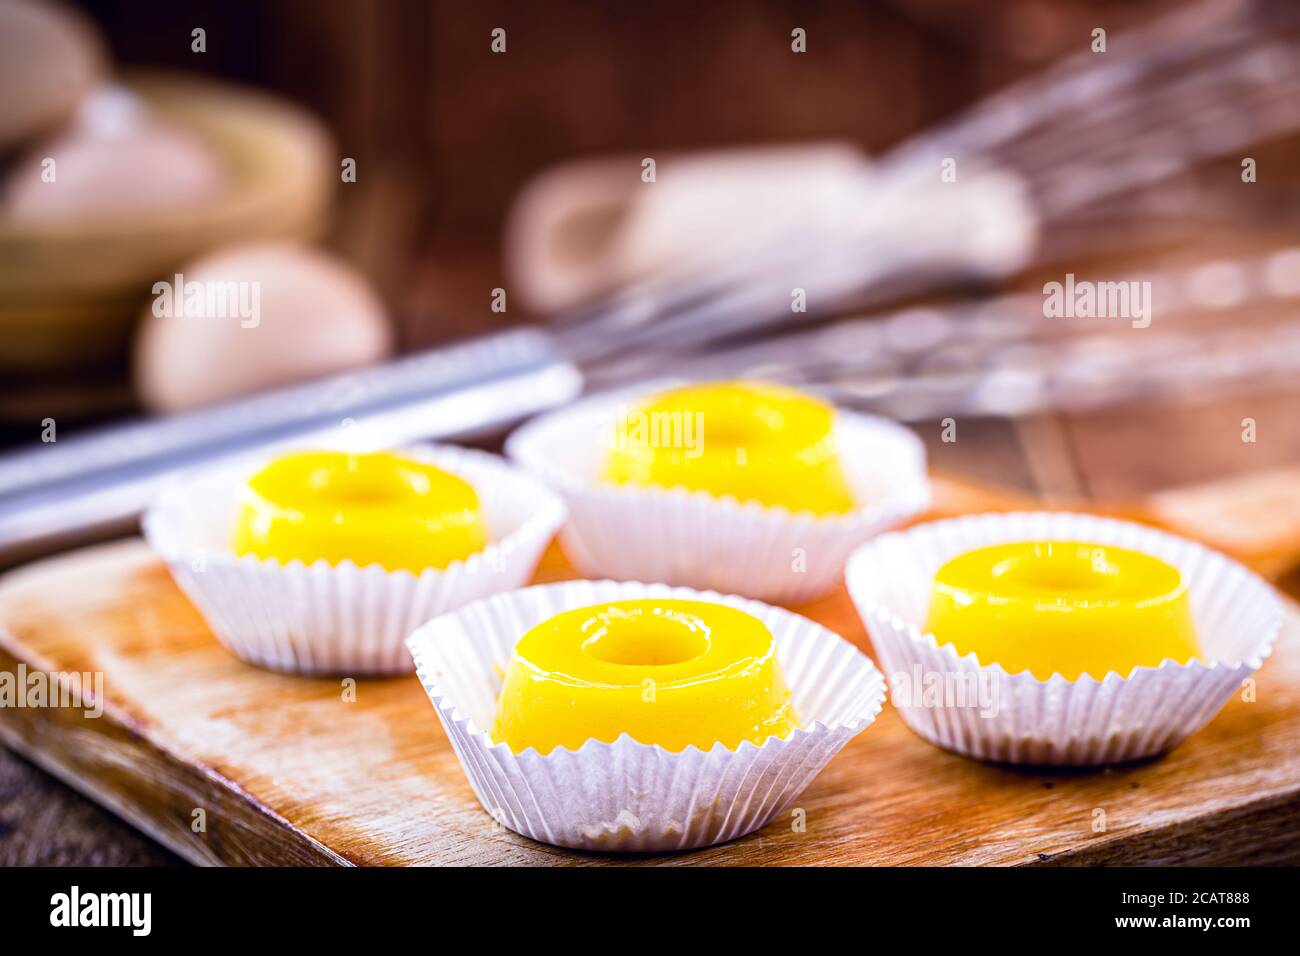 Diversi dolci chiamati 'Quindim', dolce brasiliano a base di tuorlo d'uovo, zucchero e cocco grattugiato. Dolce giallo tipico della cucina brasiliana. Foto Stock